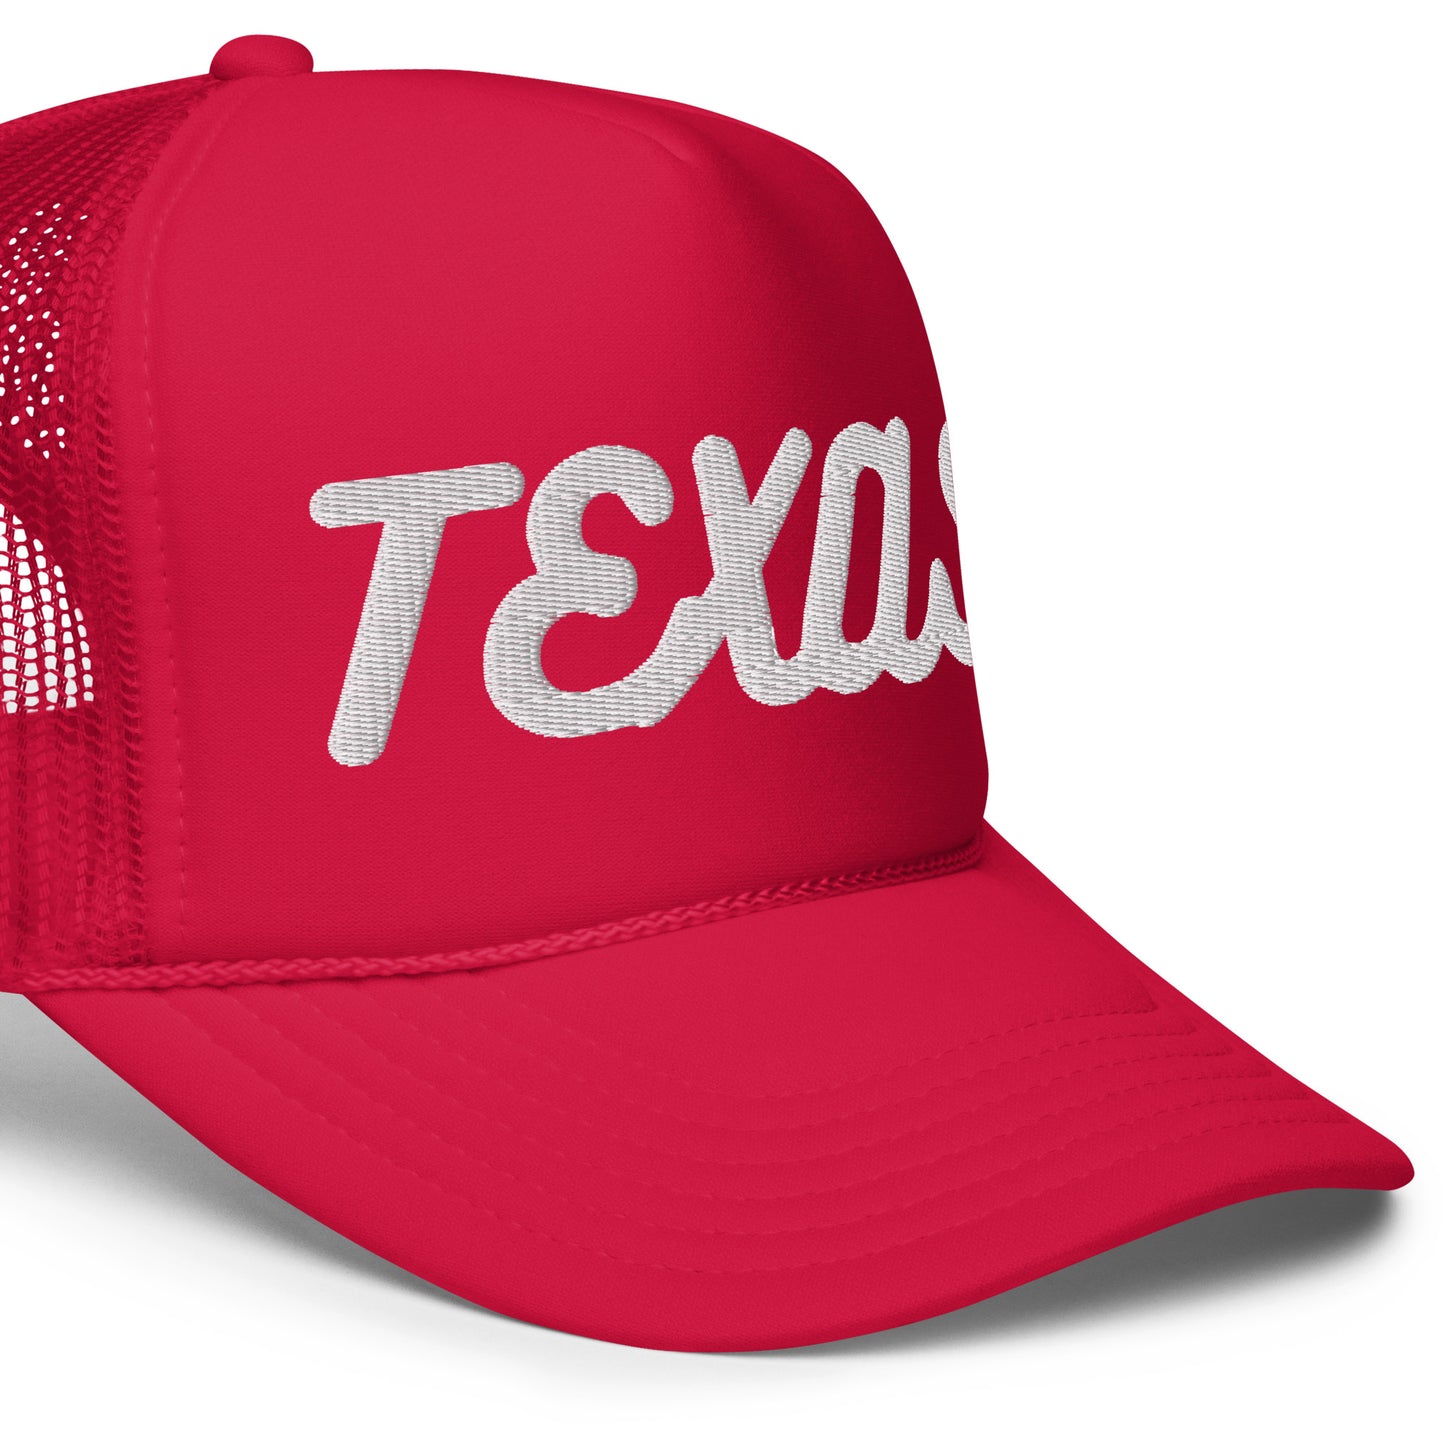 Texas Foam trucker hat